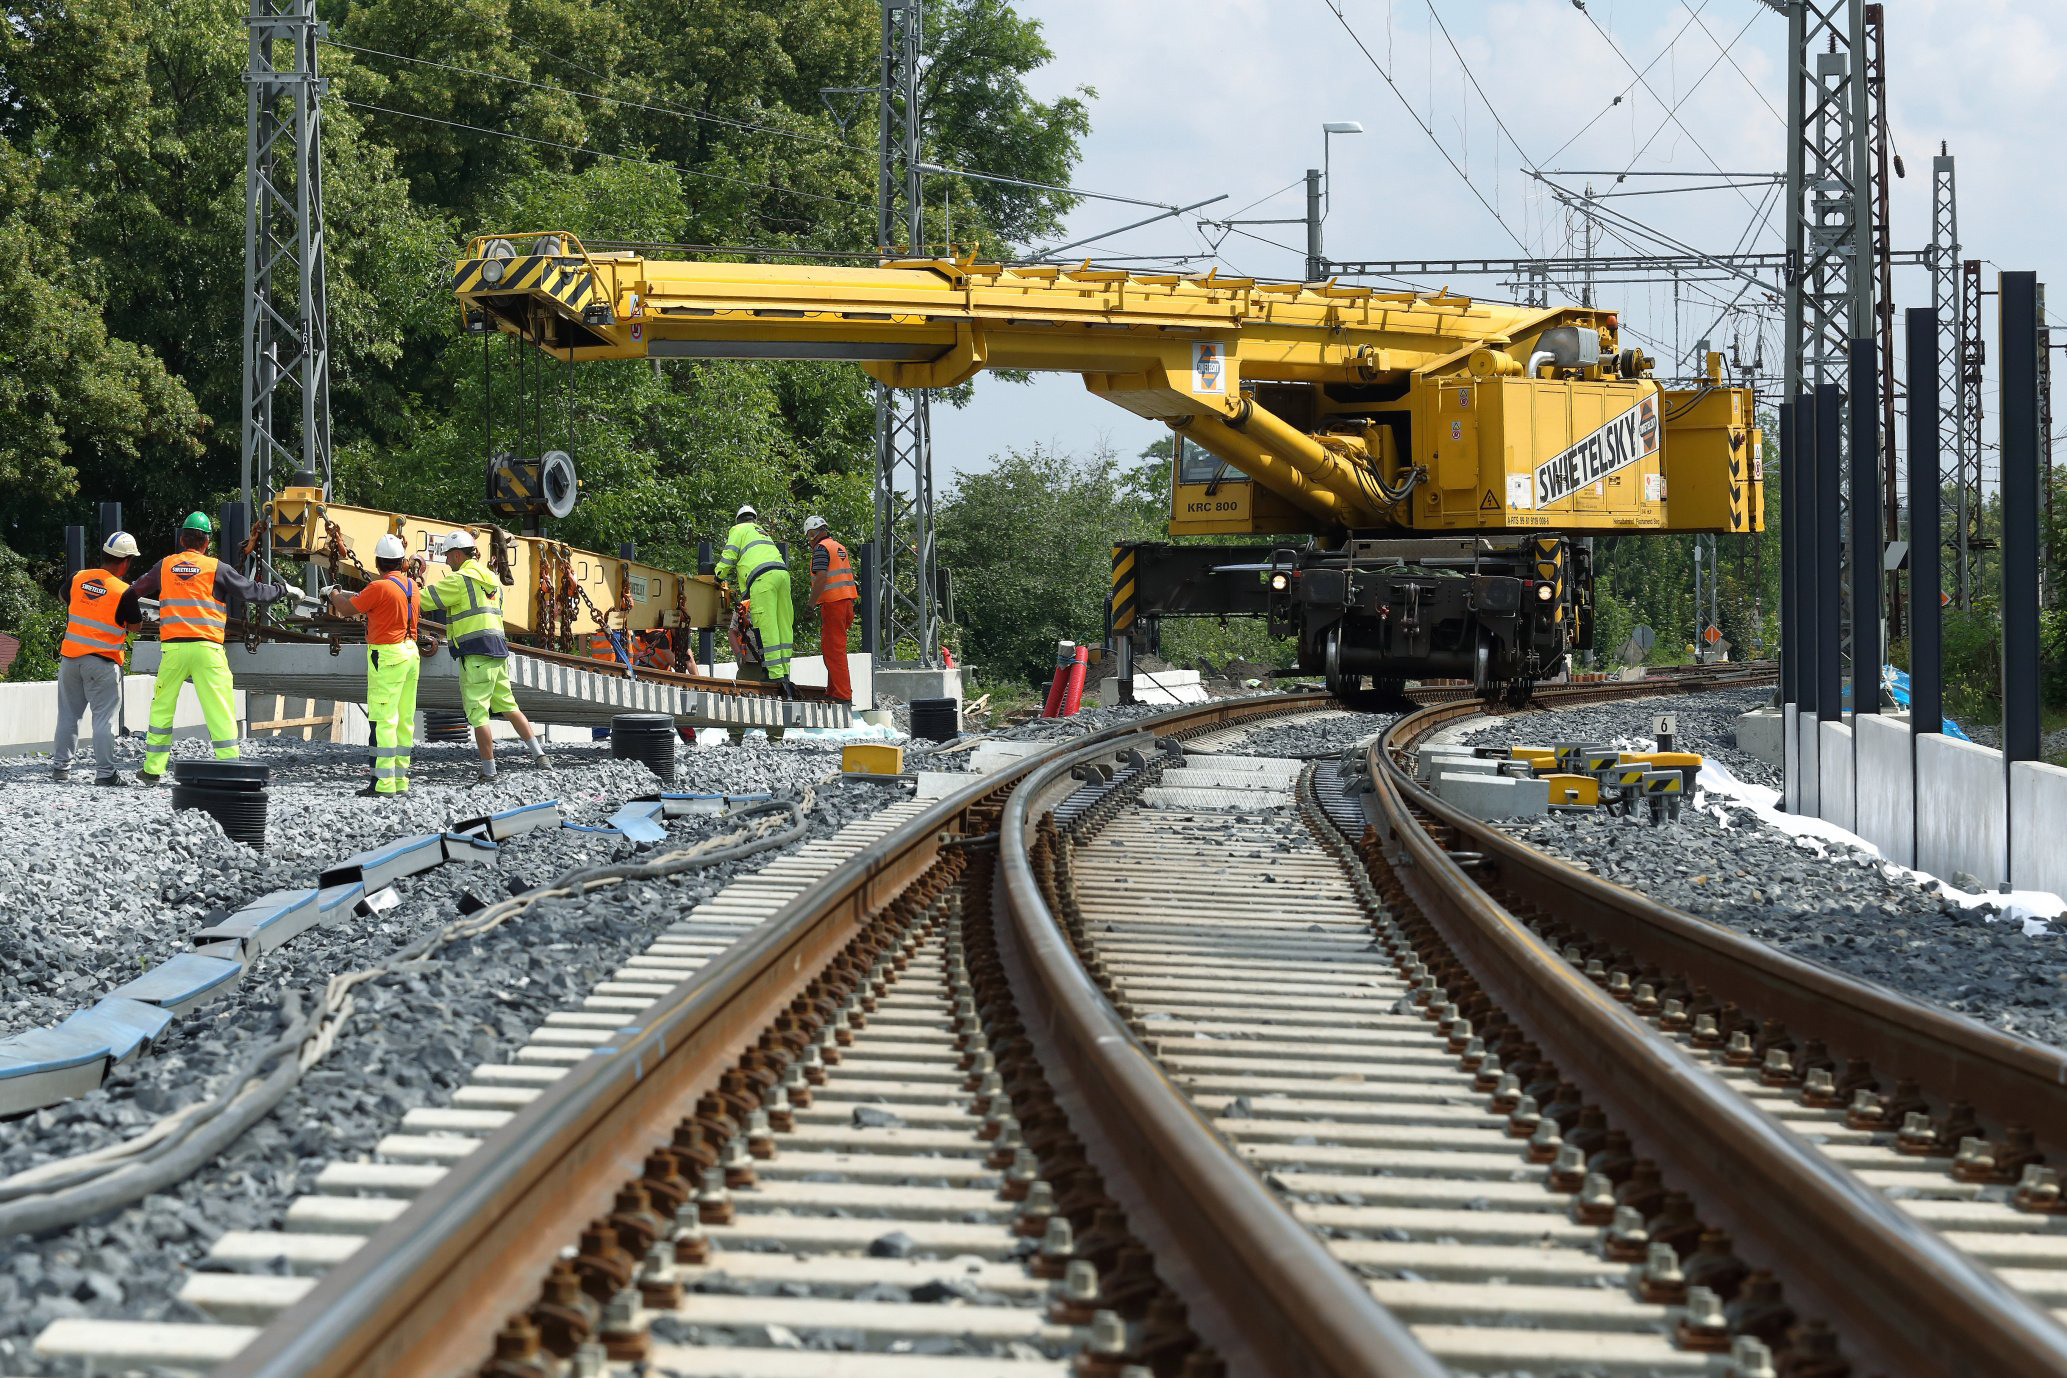 Obnova železniční stanice, Čelákovice - Jernbaner